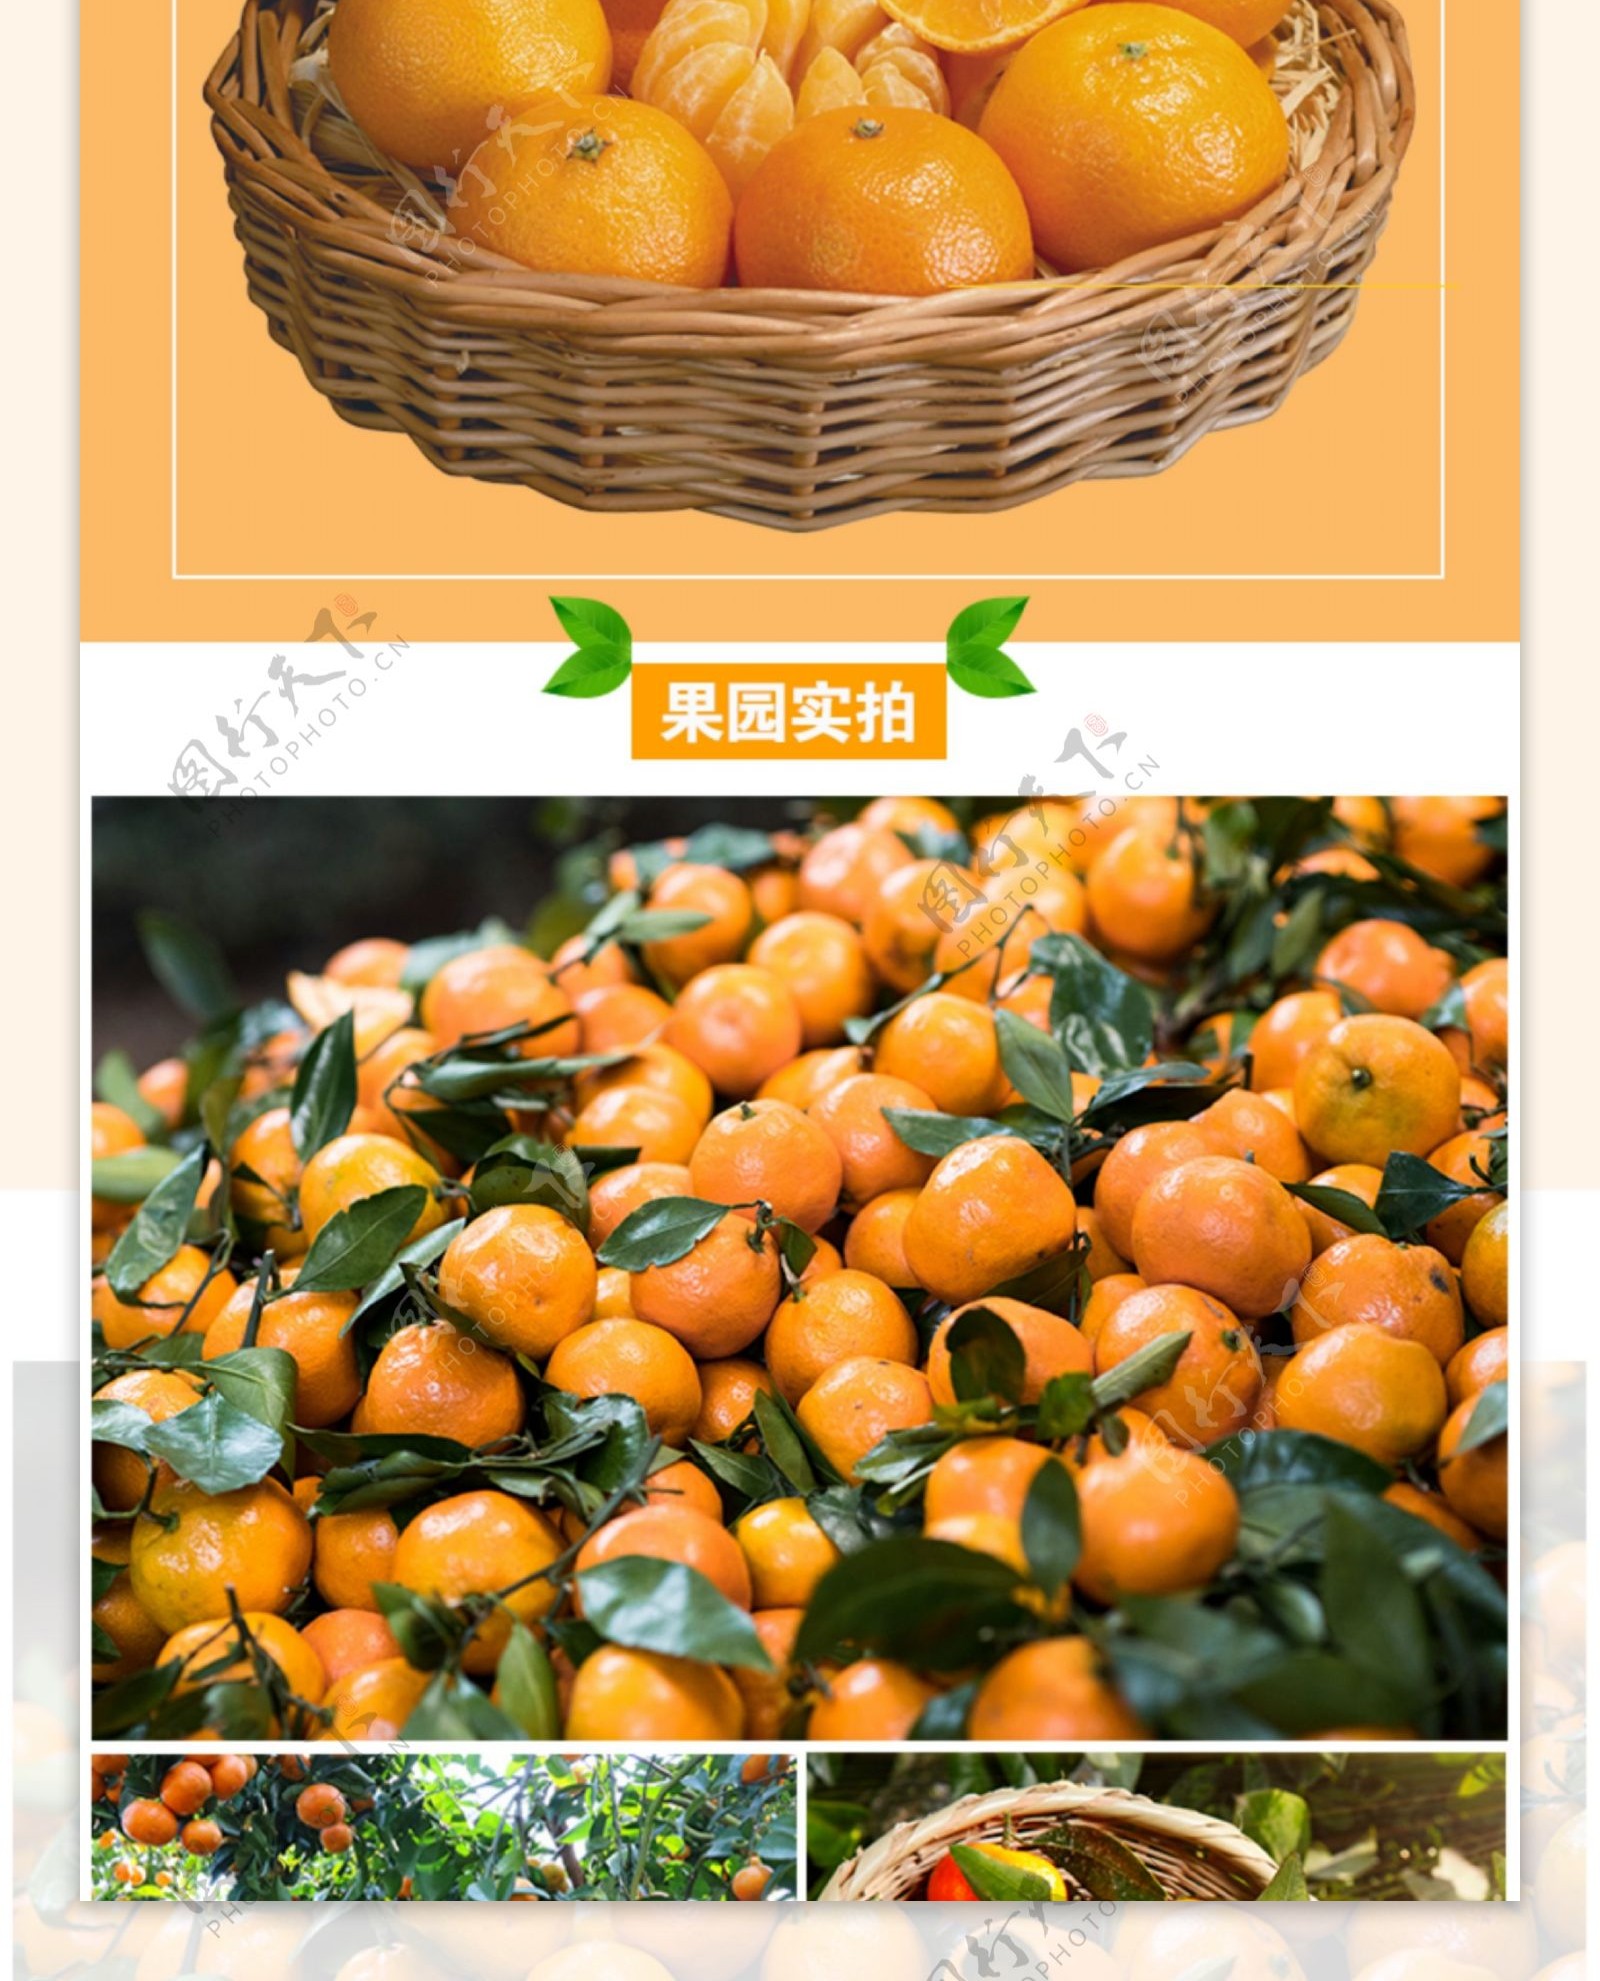 蜜汁砂糖橘促销天猫详情页